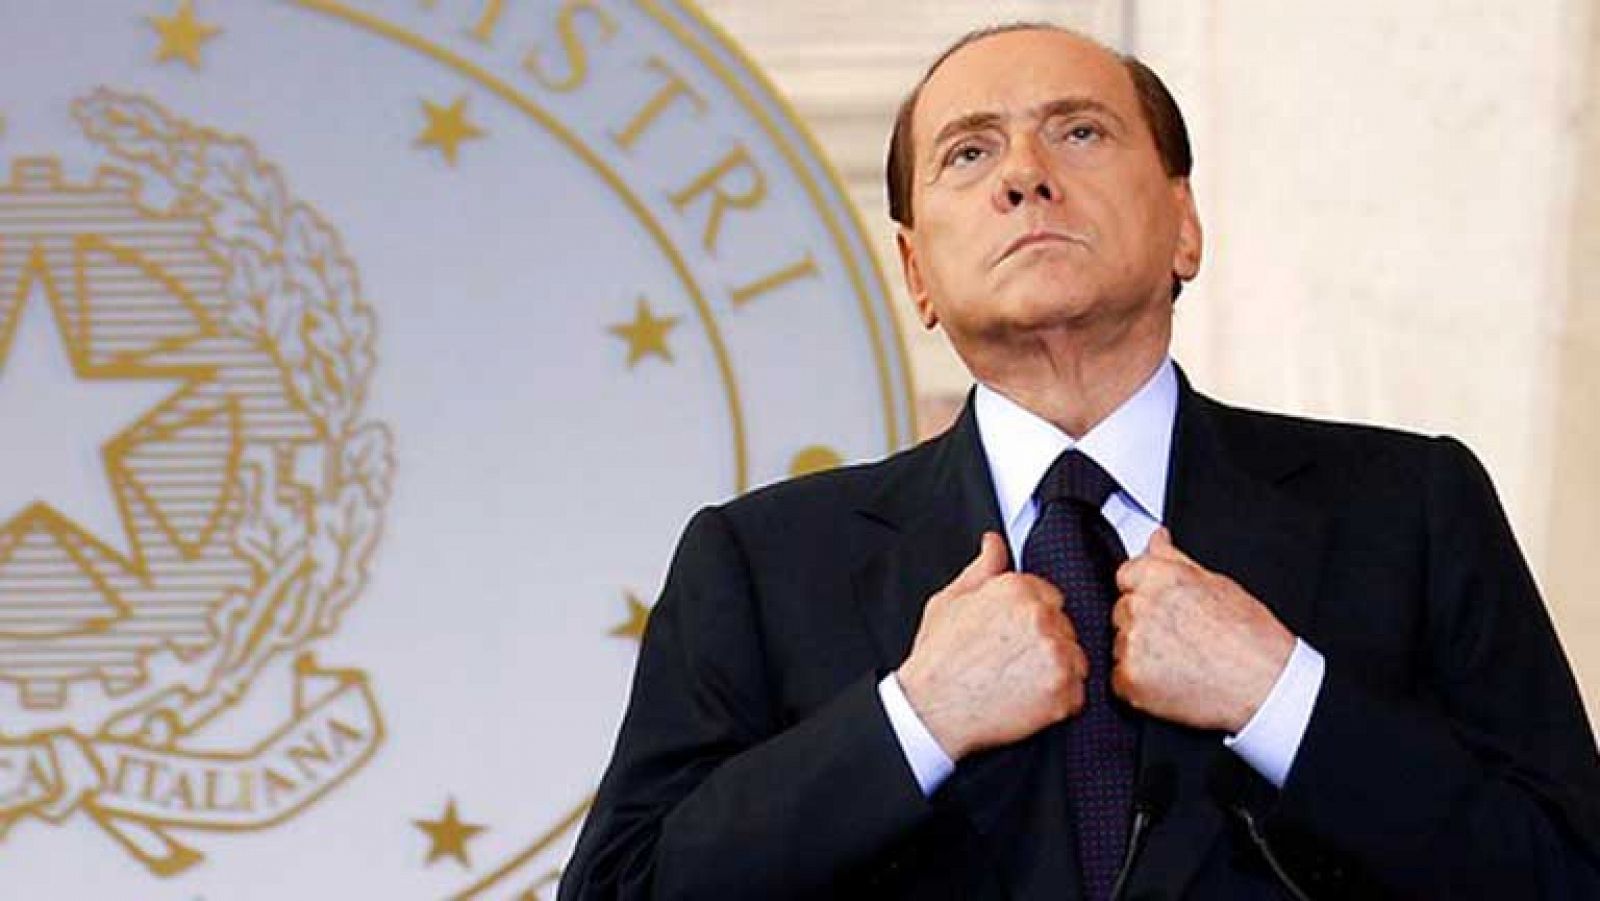 Berlusconi condenado a 4 años de prisión por fraude fiscal